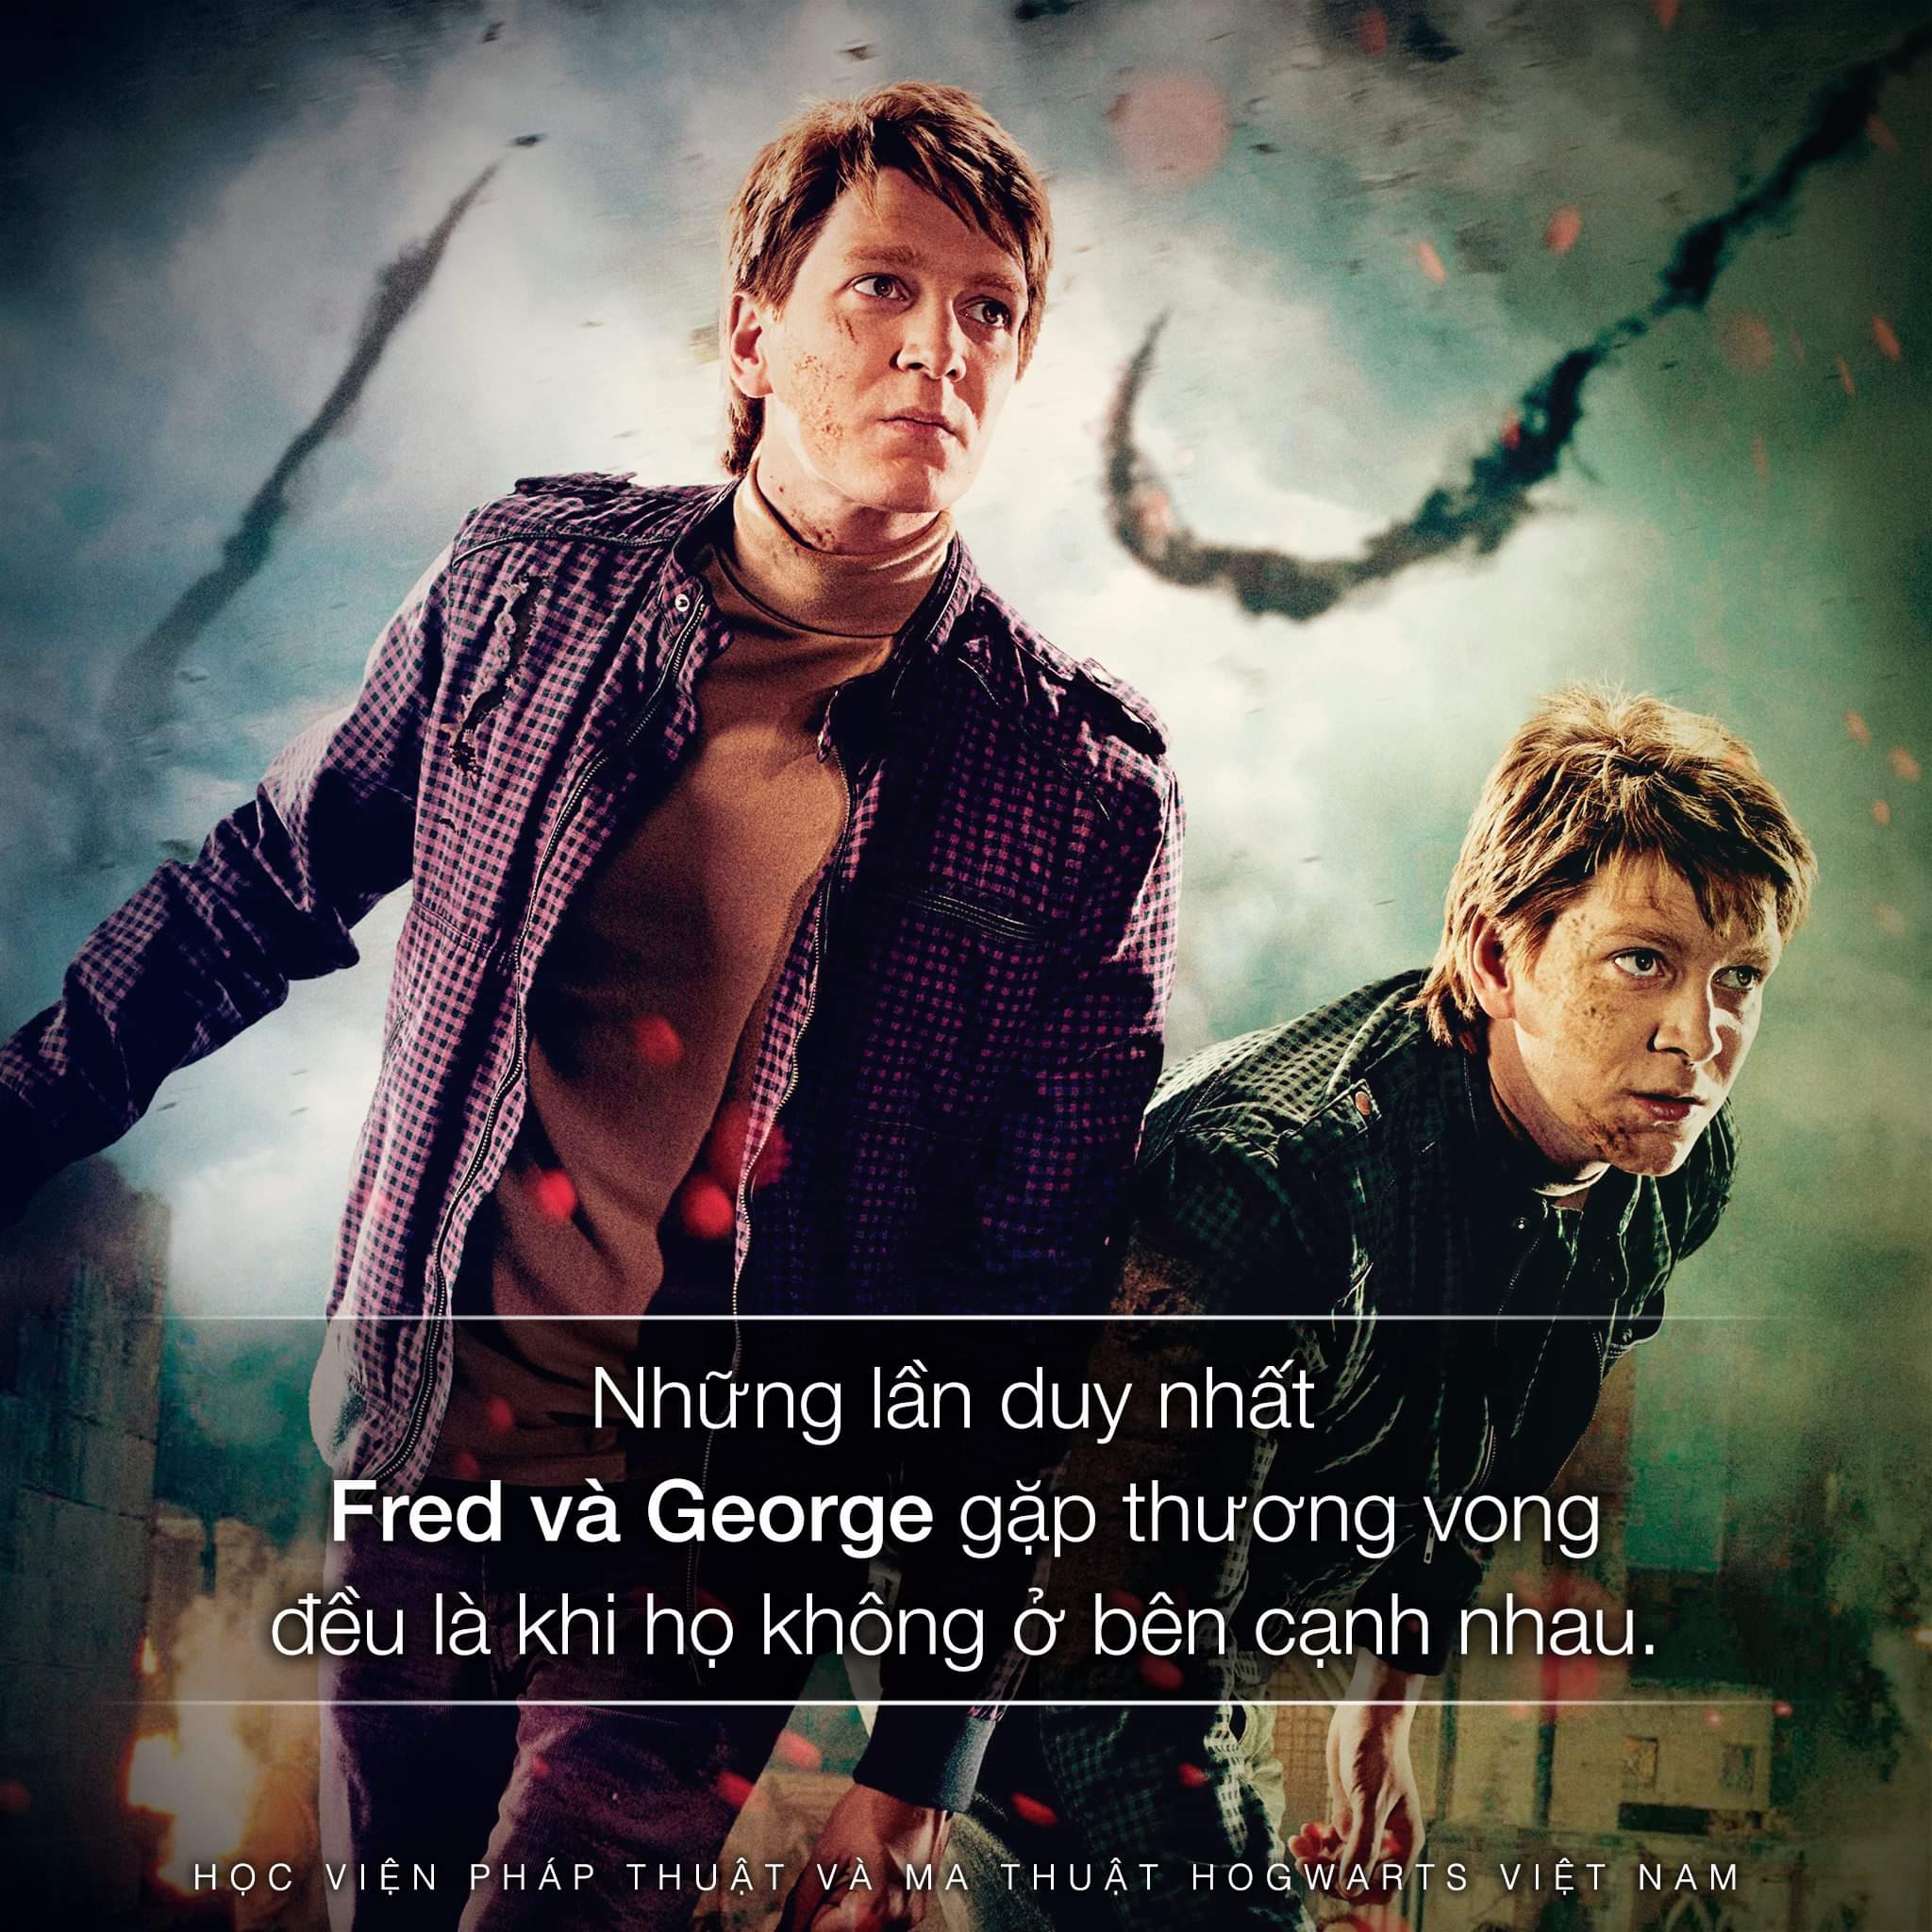 Phát hiện nhỏ về cặp sinh đôi Fred và George Weasley